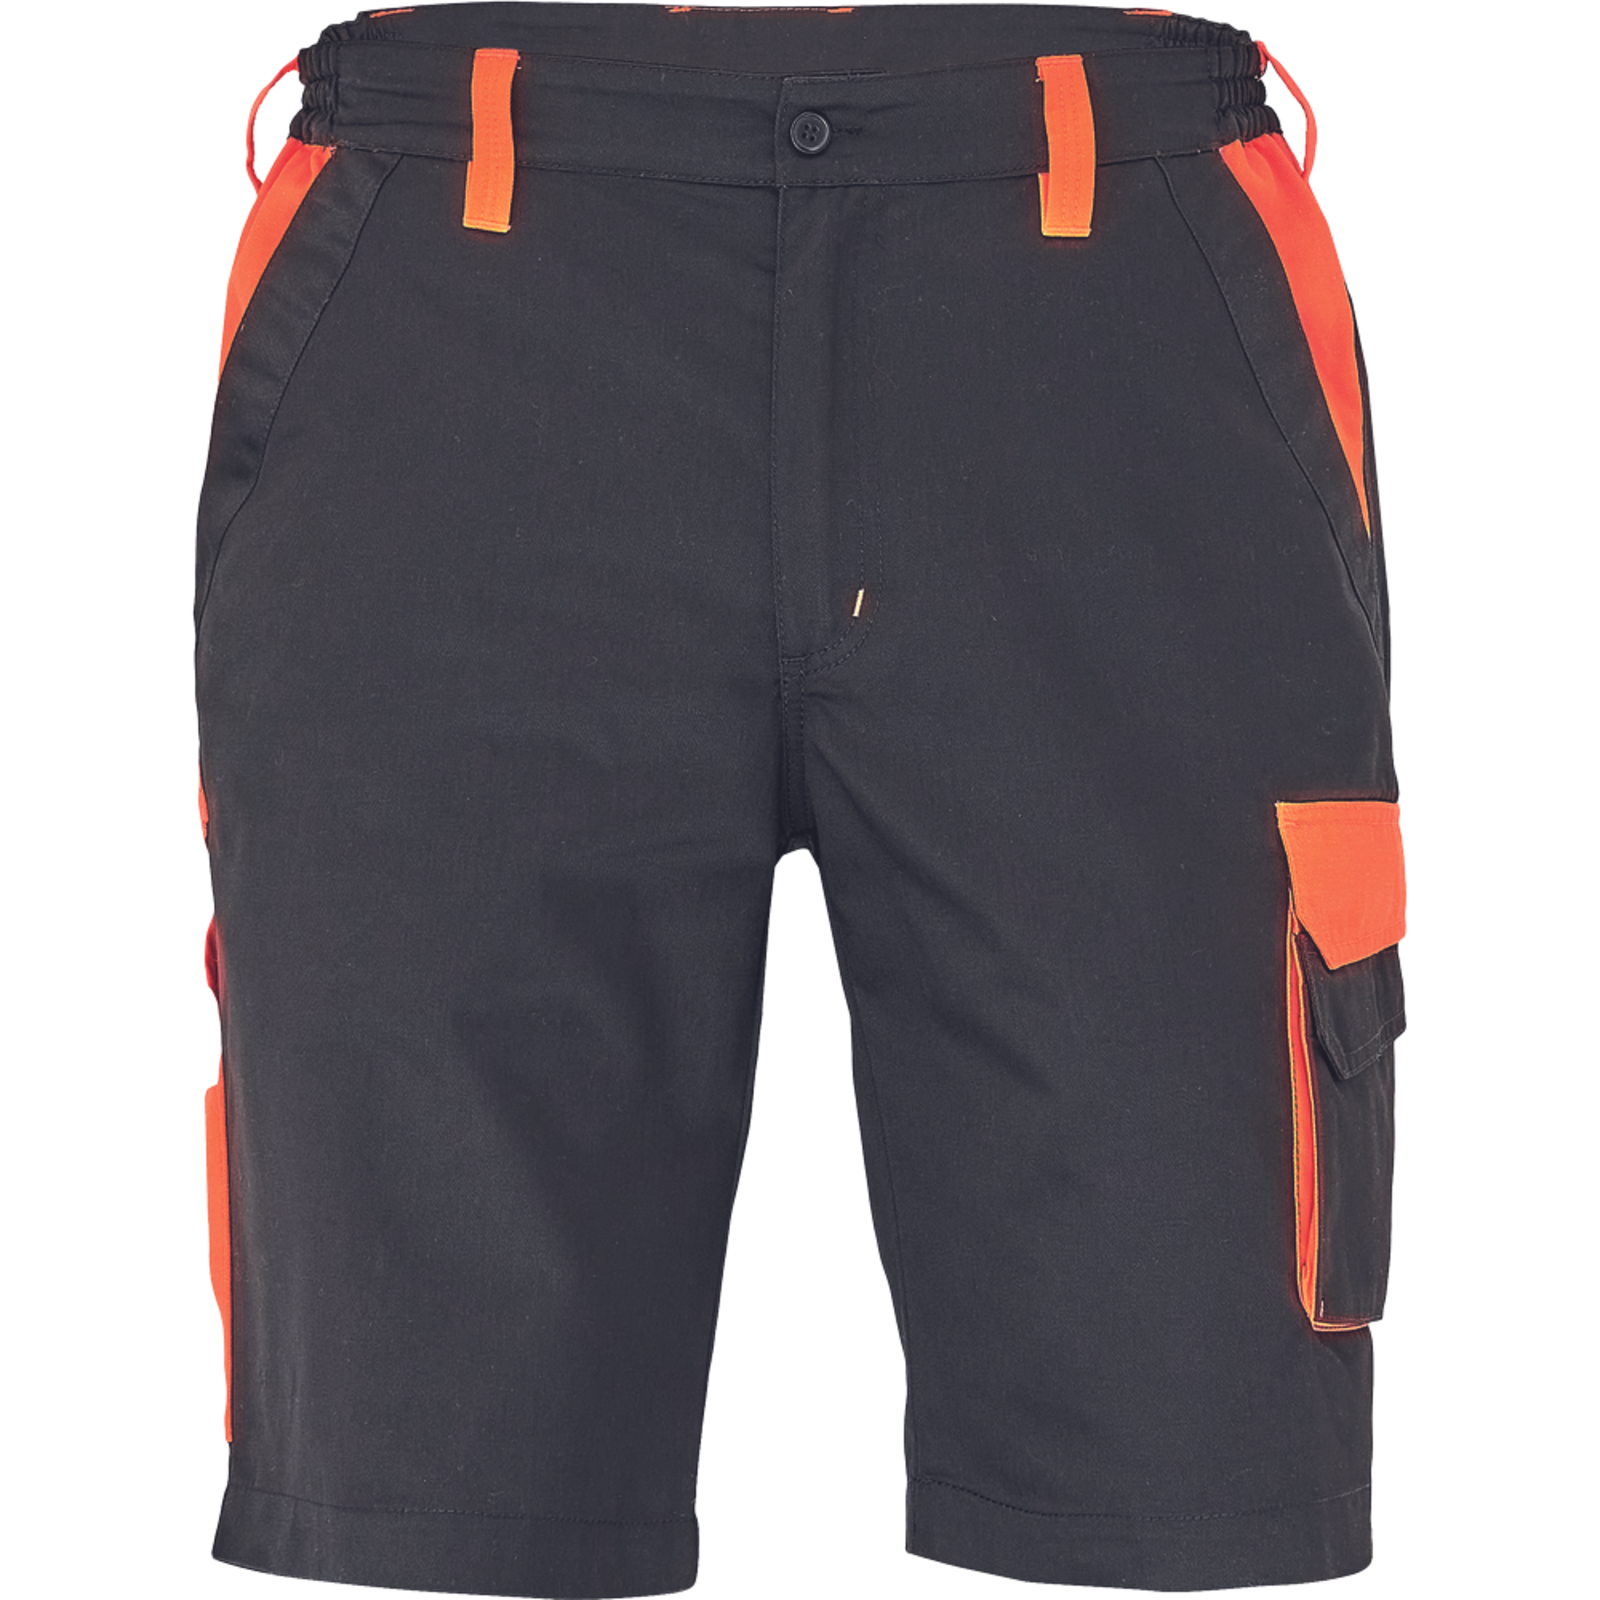 Pánske šortky Cerva Max Vivo - veľkosť: 66, farba: čierna/oranžová